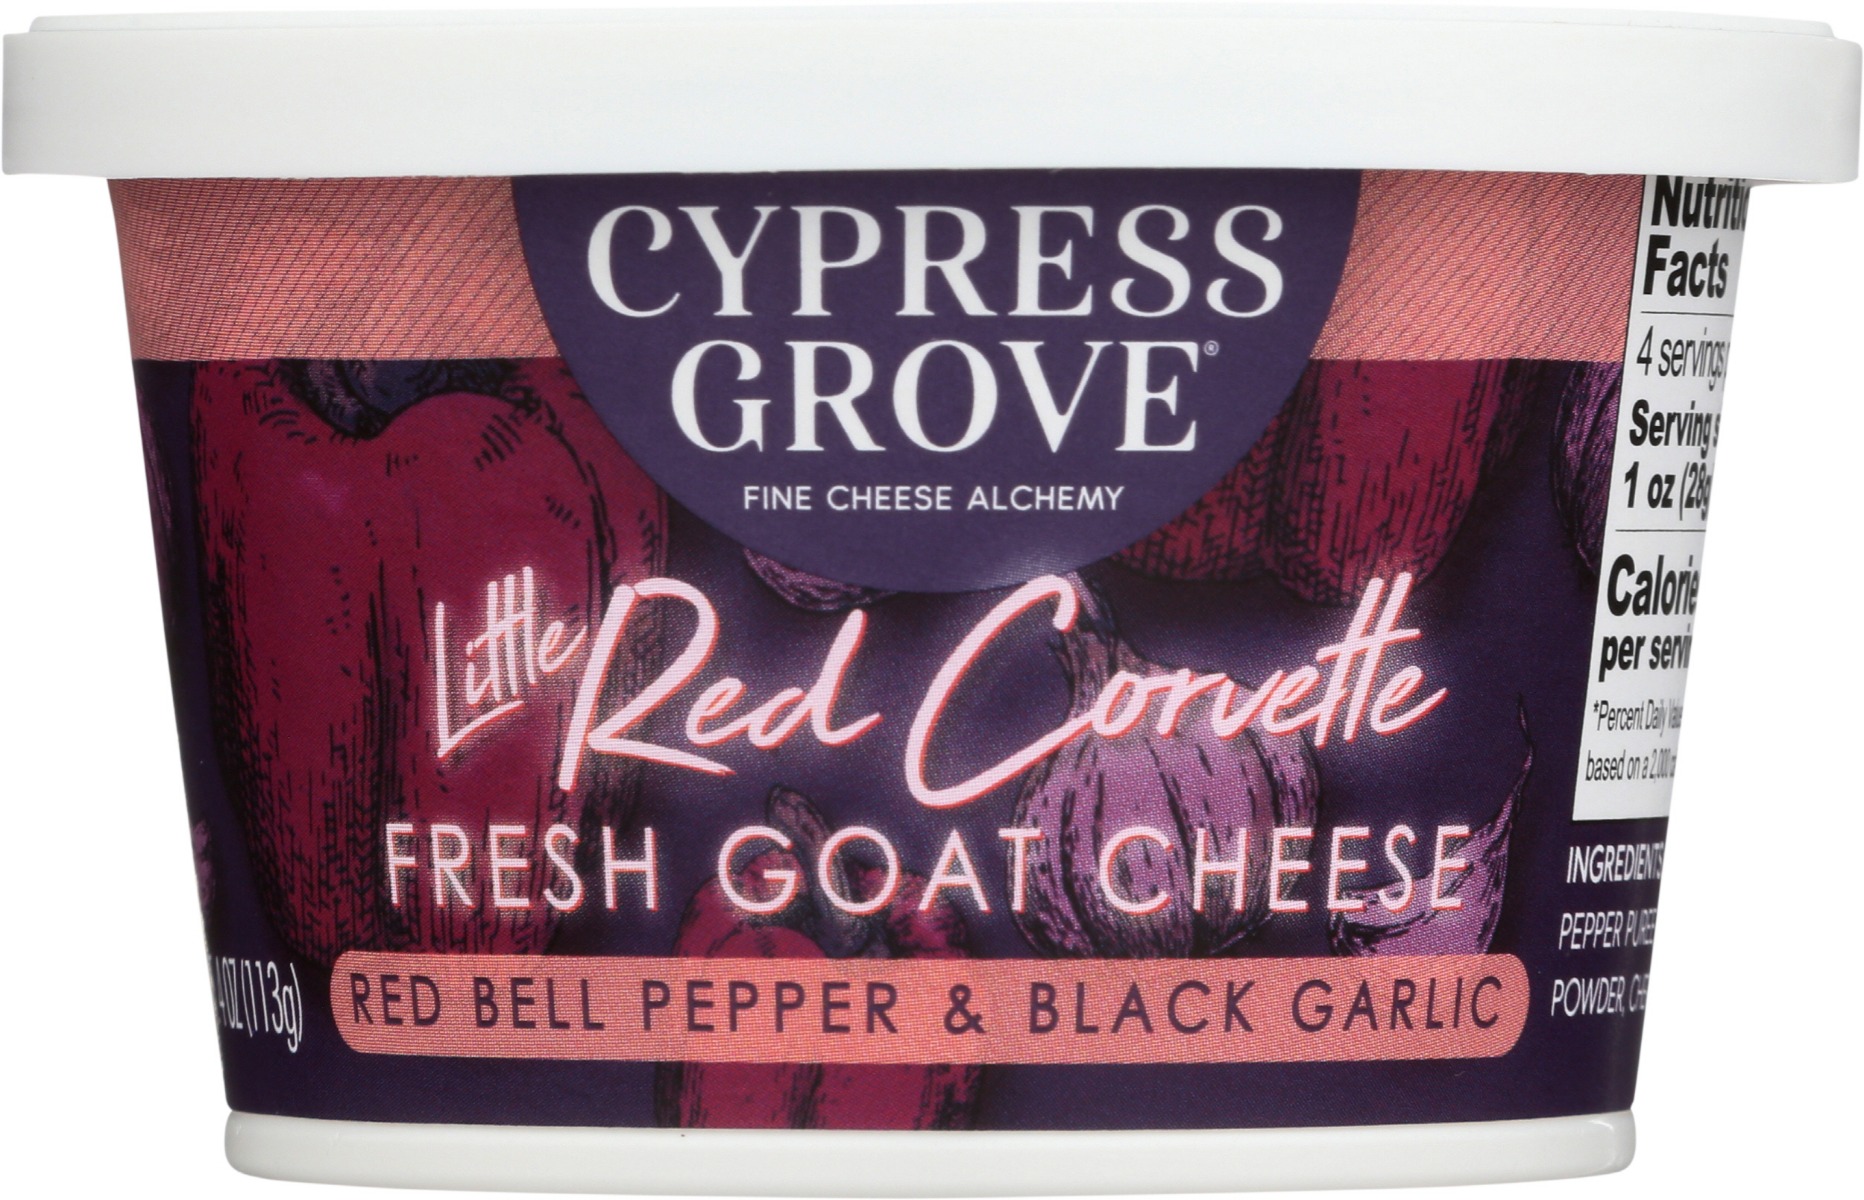 Little Red Corvette Red Bell Pepper & Black Garlic Fresh Goat Cheese, Little Red Corvette - 039496021947